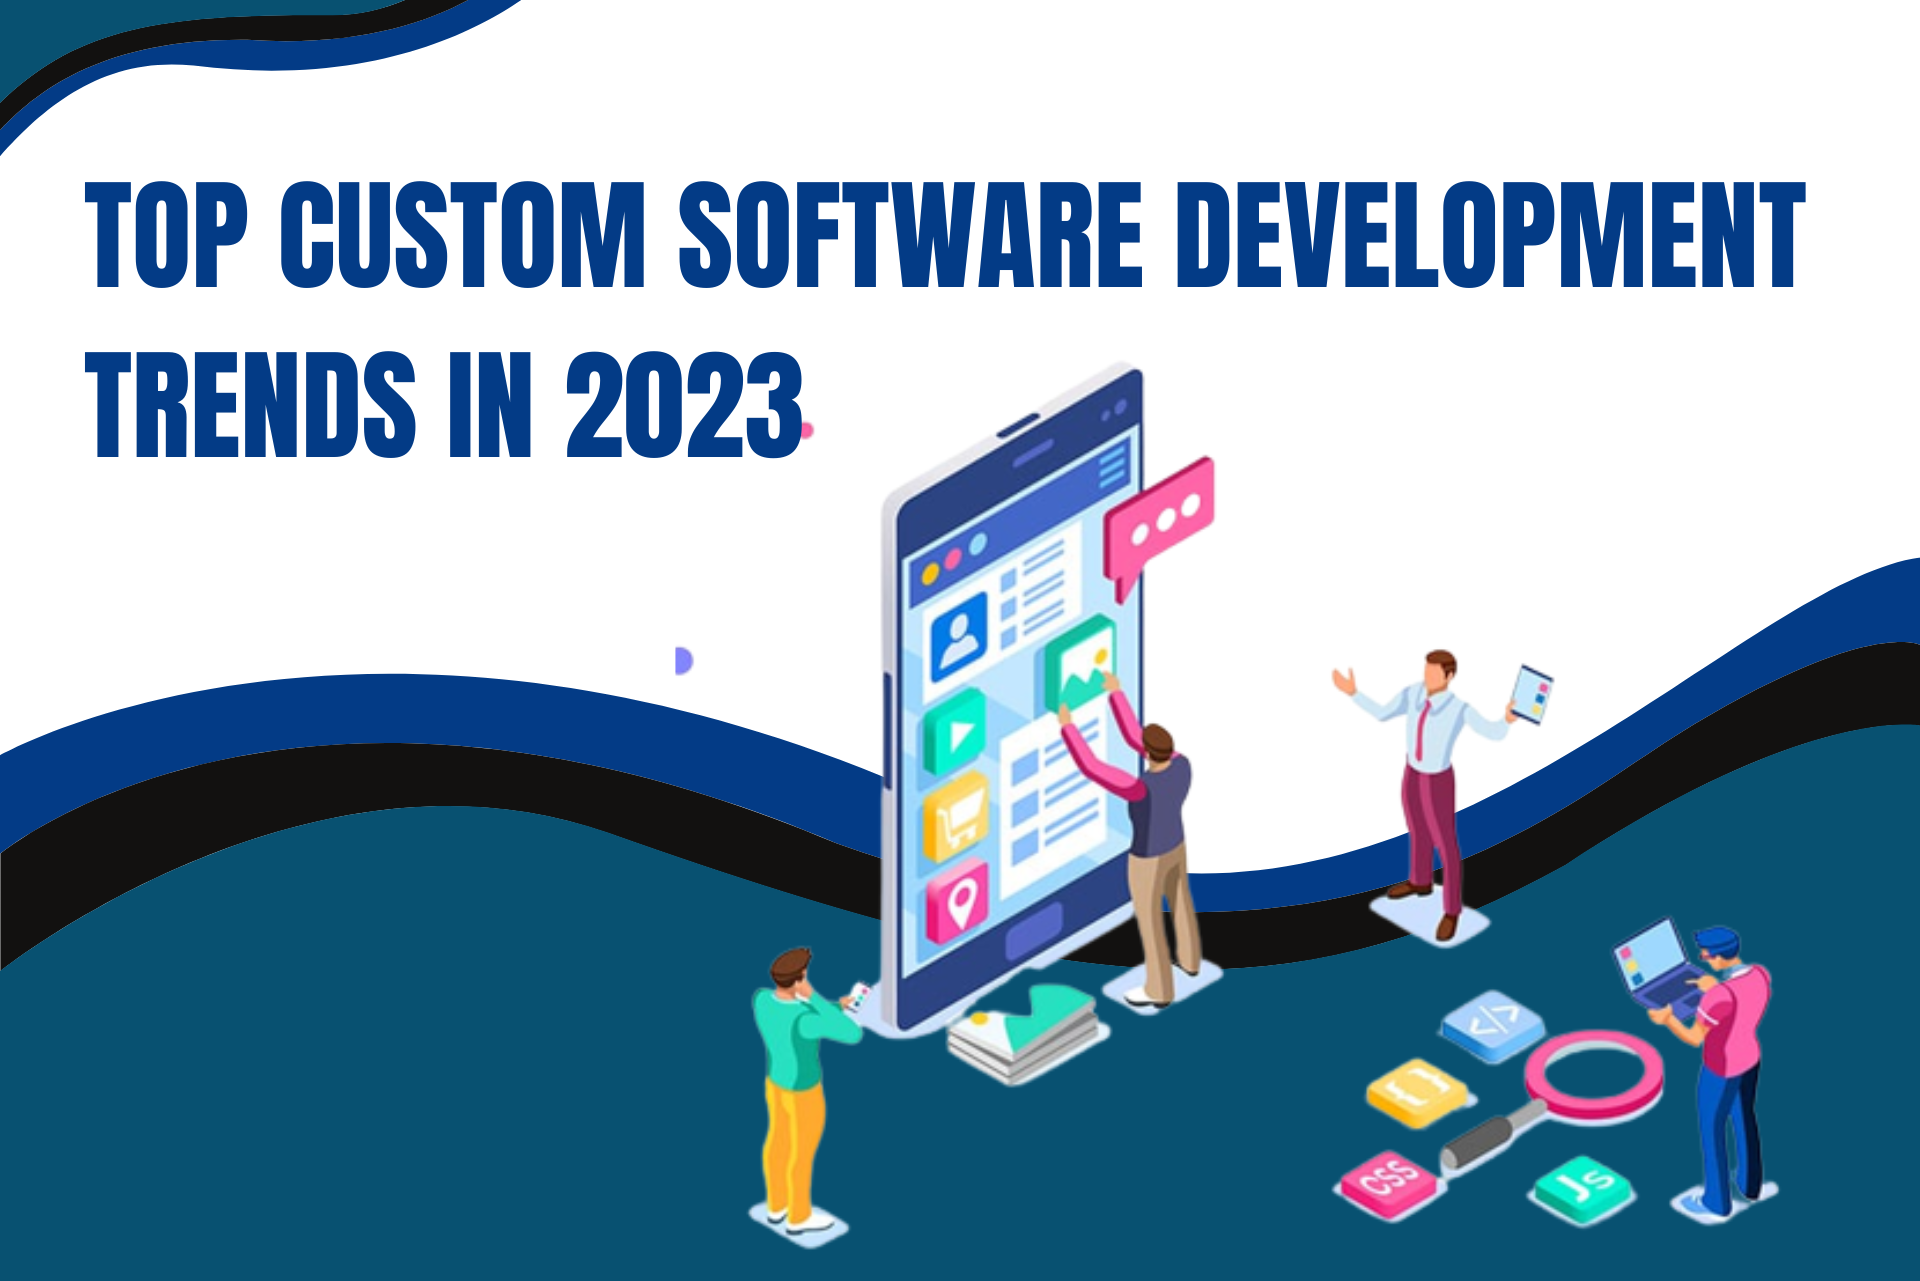 Top Custom Software Development Trends in 2023